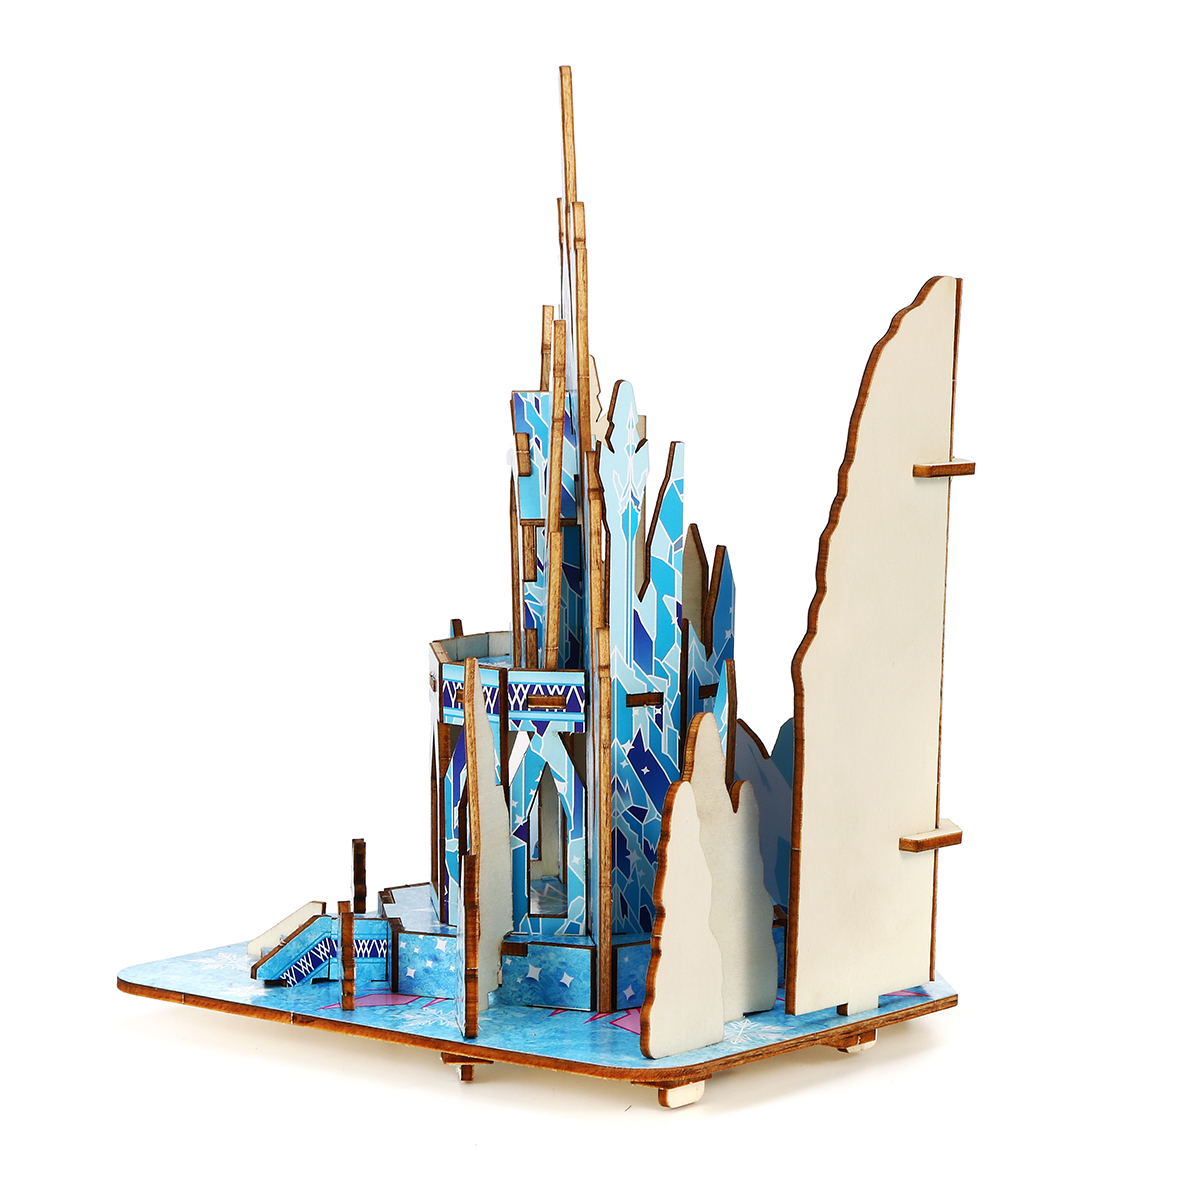 Castelo de gelo de madeira 3D DIY House Kit Puzzle Brinquedos 3D Jigsaw Puzzle Modelo Brinquedo Educacional Presente de aniversário para crianças